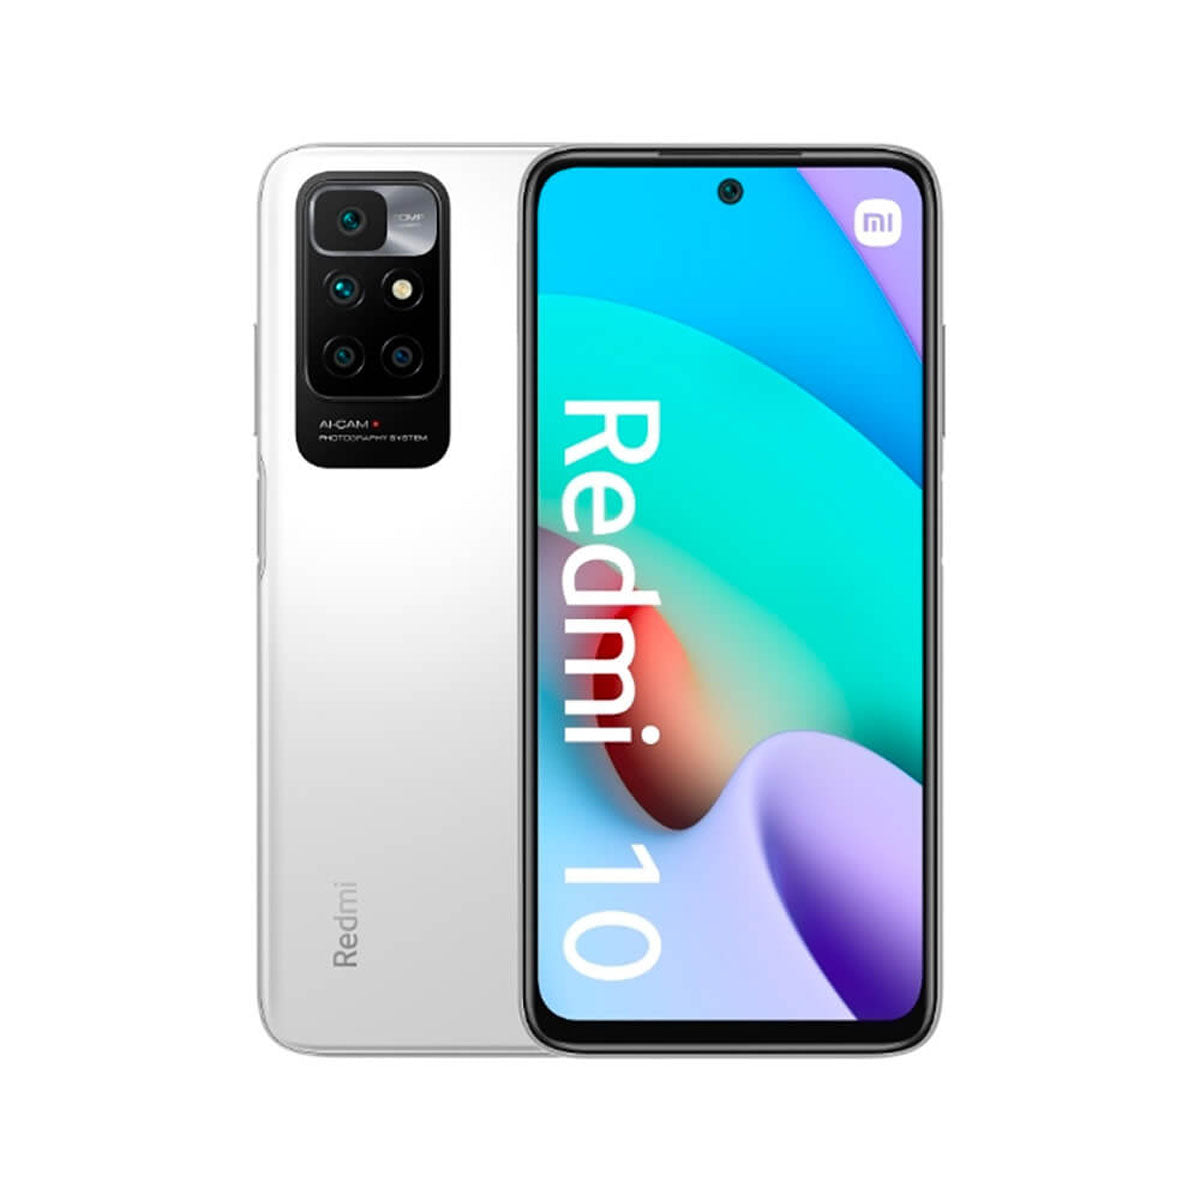 Xiaomi Redmi 10 2022: precio y disponibilidad en Colombia •